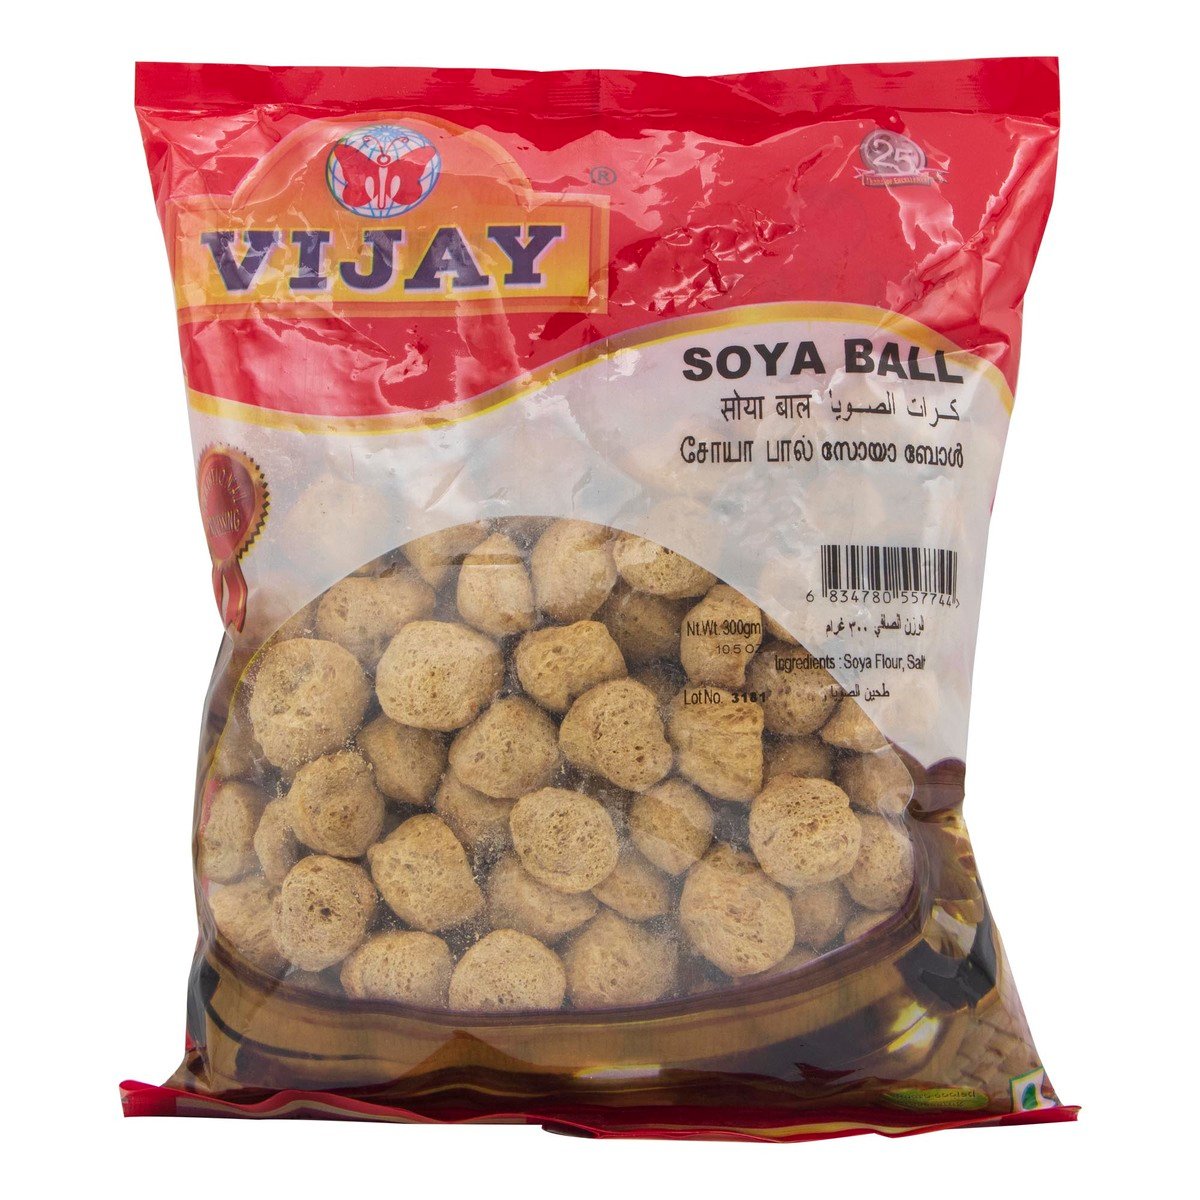 Vijay Soya Ball 300g